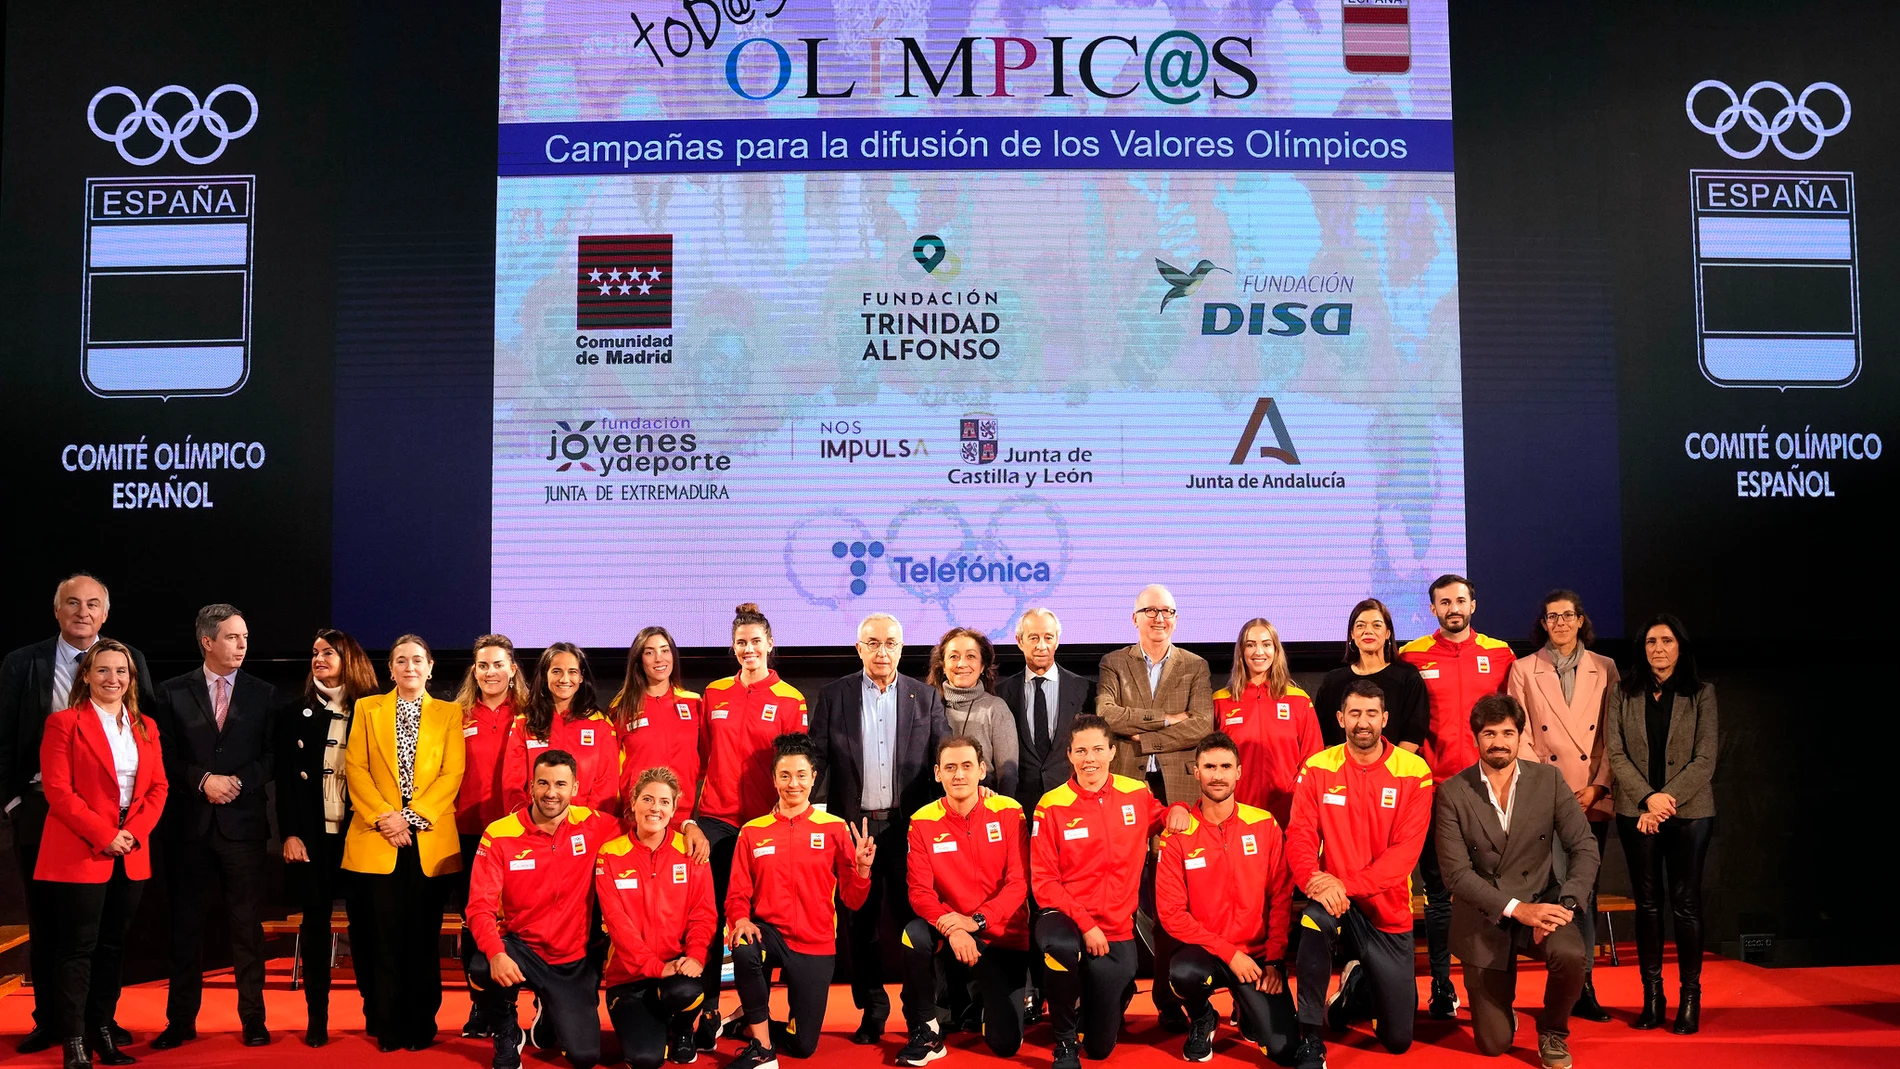 El proyecto está impulsado por el Comité Olímpico Español y la Fundación Trinidad Alfonso